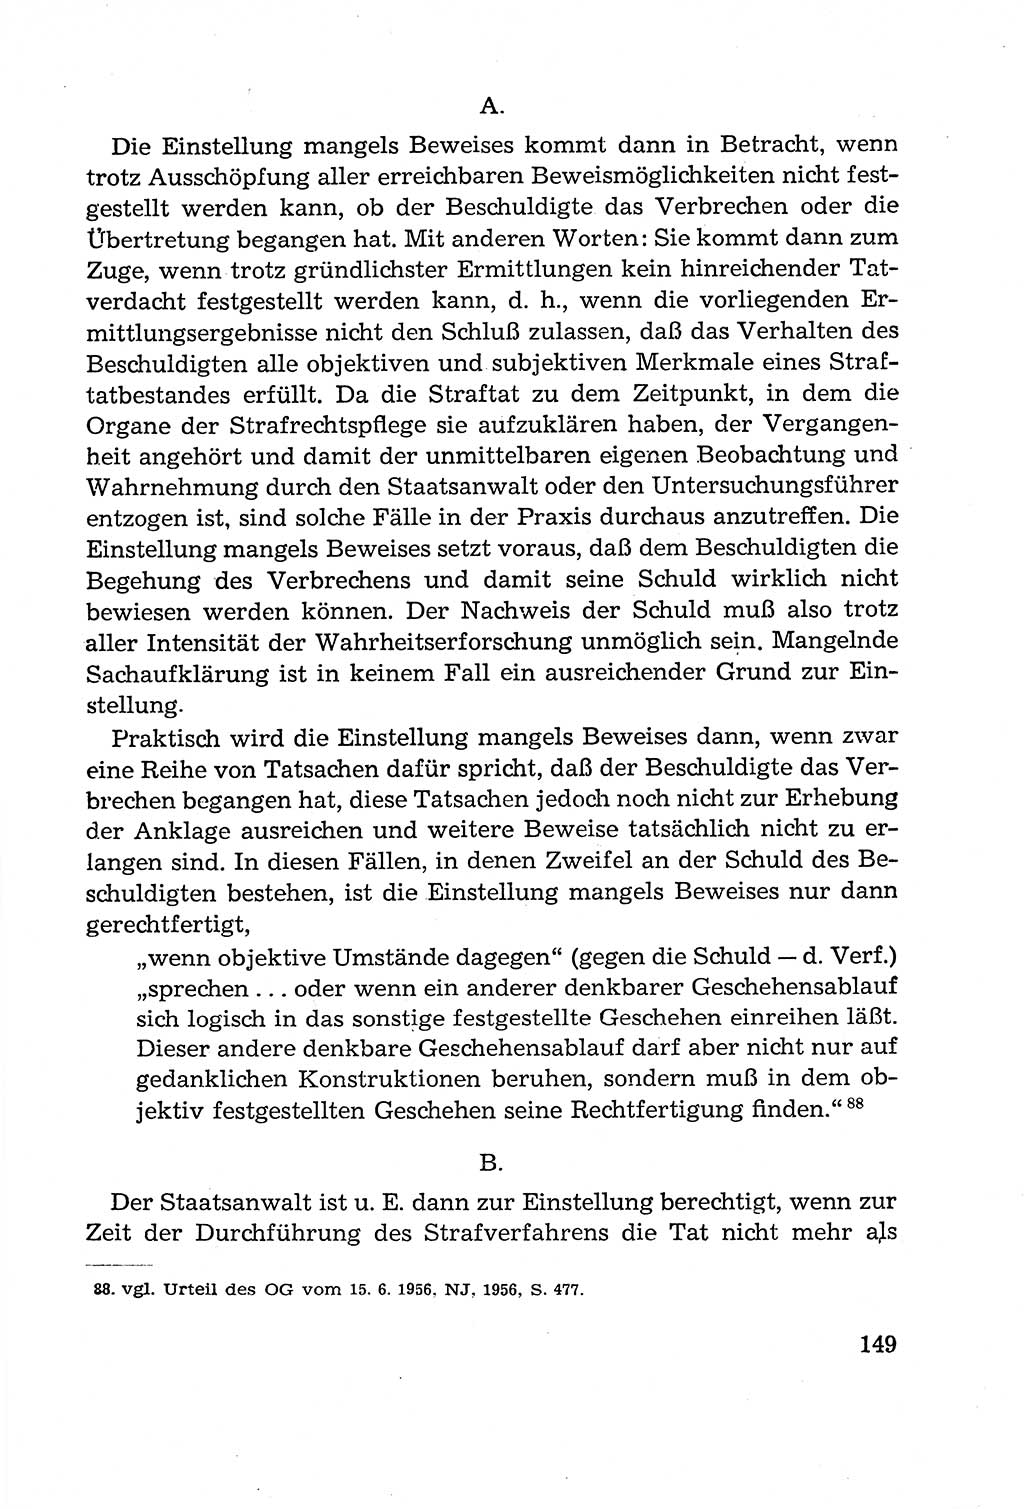 Leitfaden des Strafprozeßrechts der Deutschen Demokratischen Republik (DDR) 1959, Seite 149 (LF StPR DDR 1959, S. 149)